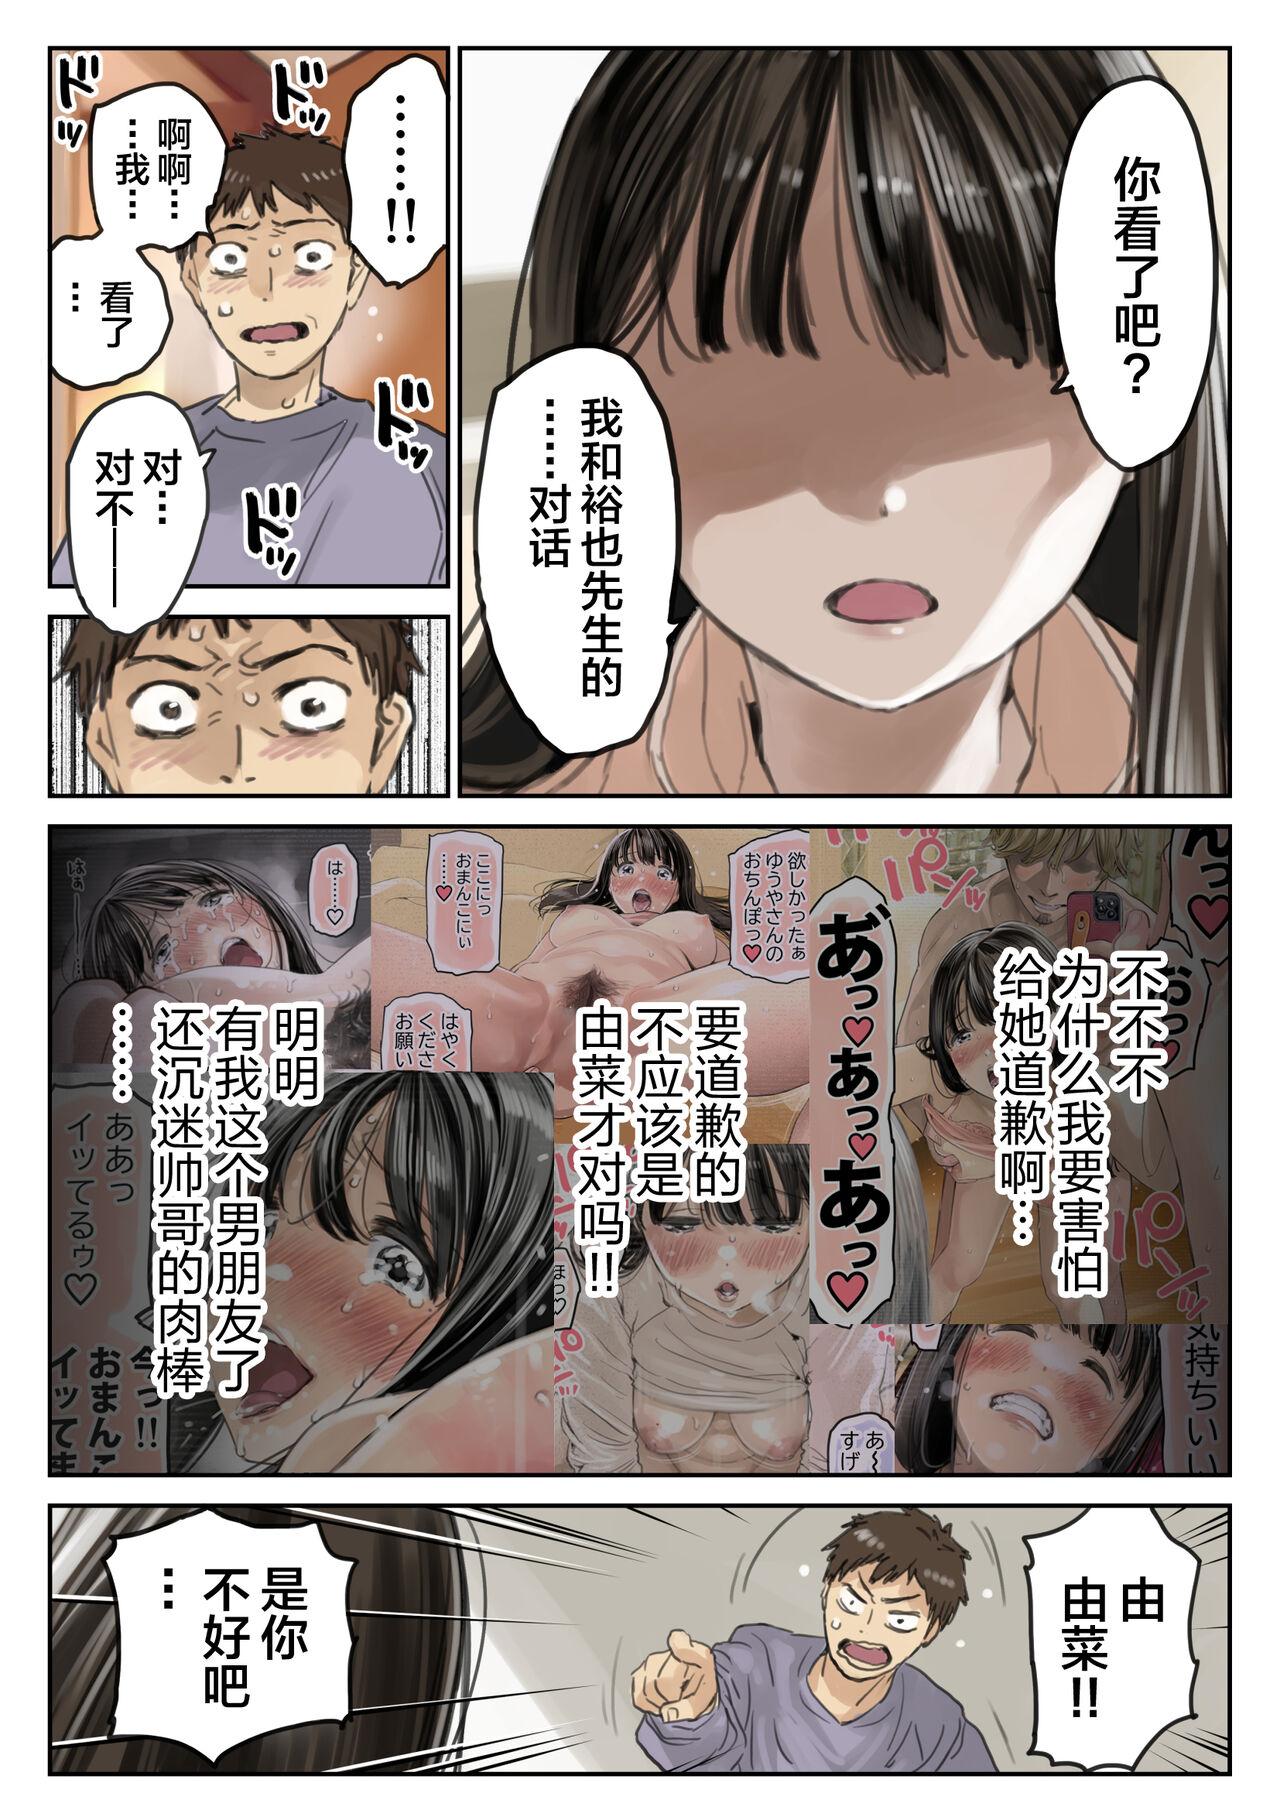 Three Some Kanojo no SmaPho o Nozoita dake nano ni 3 | I Just Snooped through Her Smartphone 3 - Original Enema - Page 5